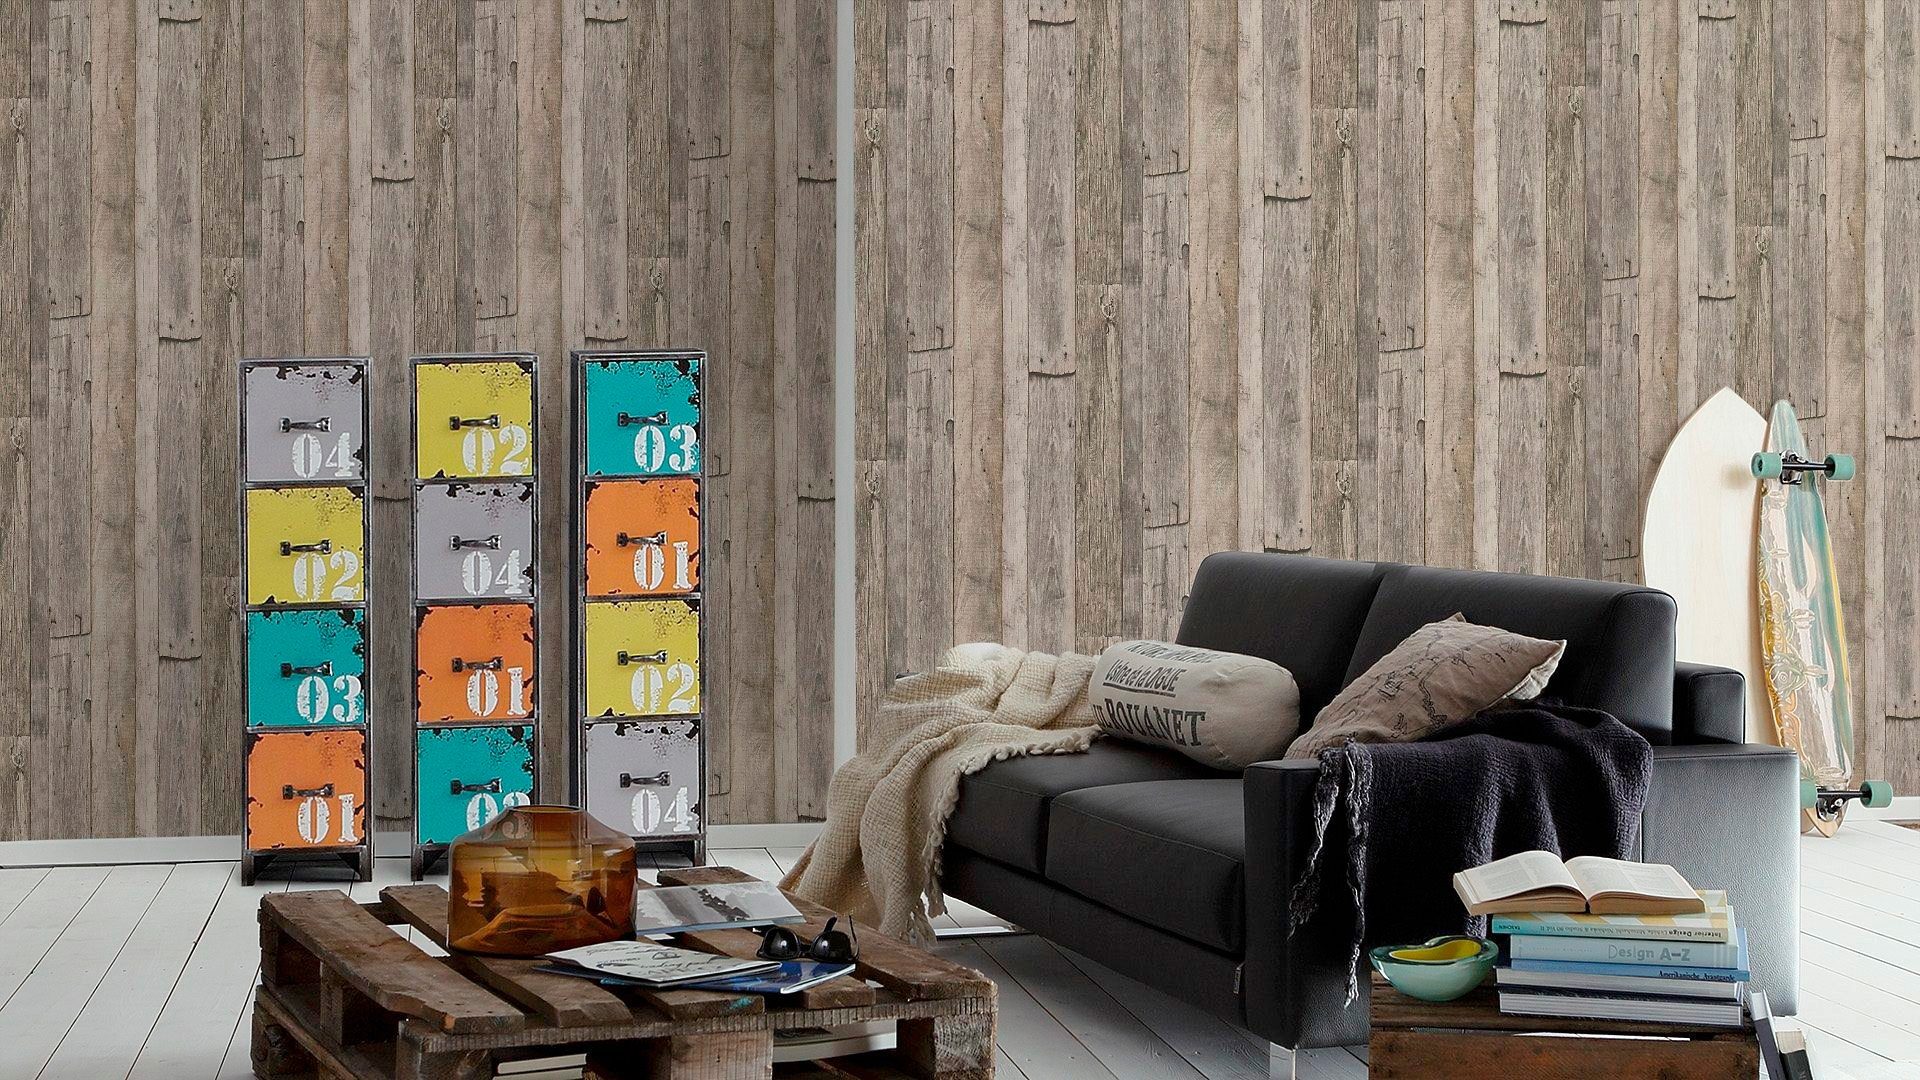 Vliestapete Edition, Création Stone Tapete matt Wood`n walls Best grau/beige 2nd living strukturiert of leicht A.S. Holz, Holzoptik